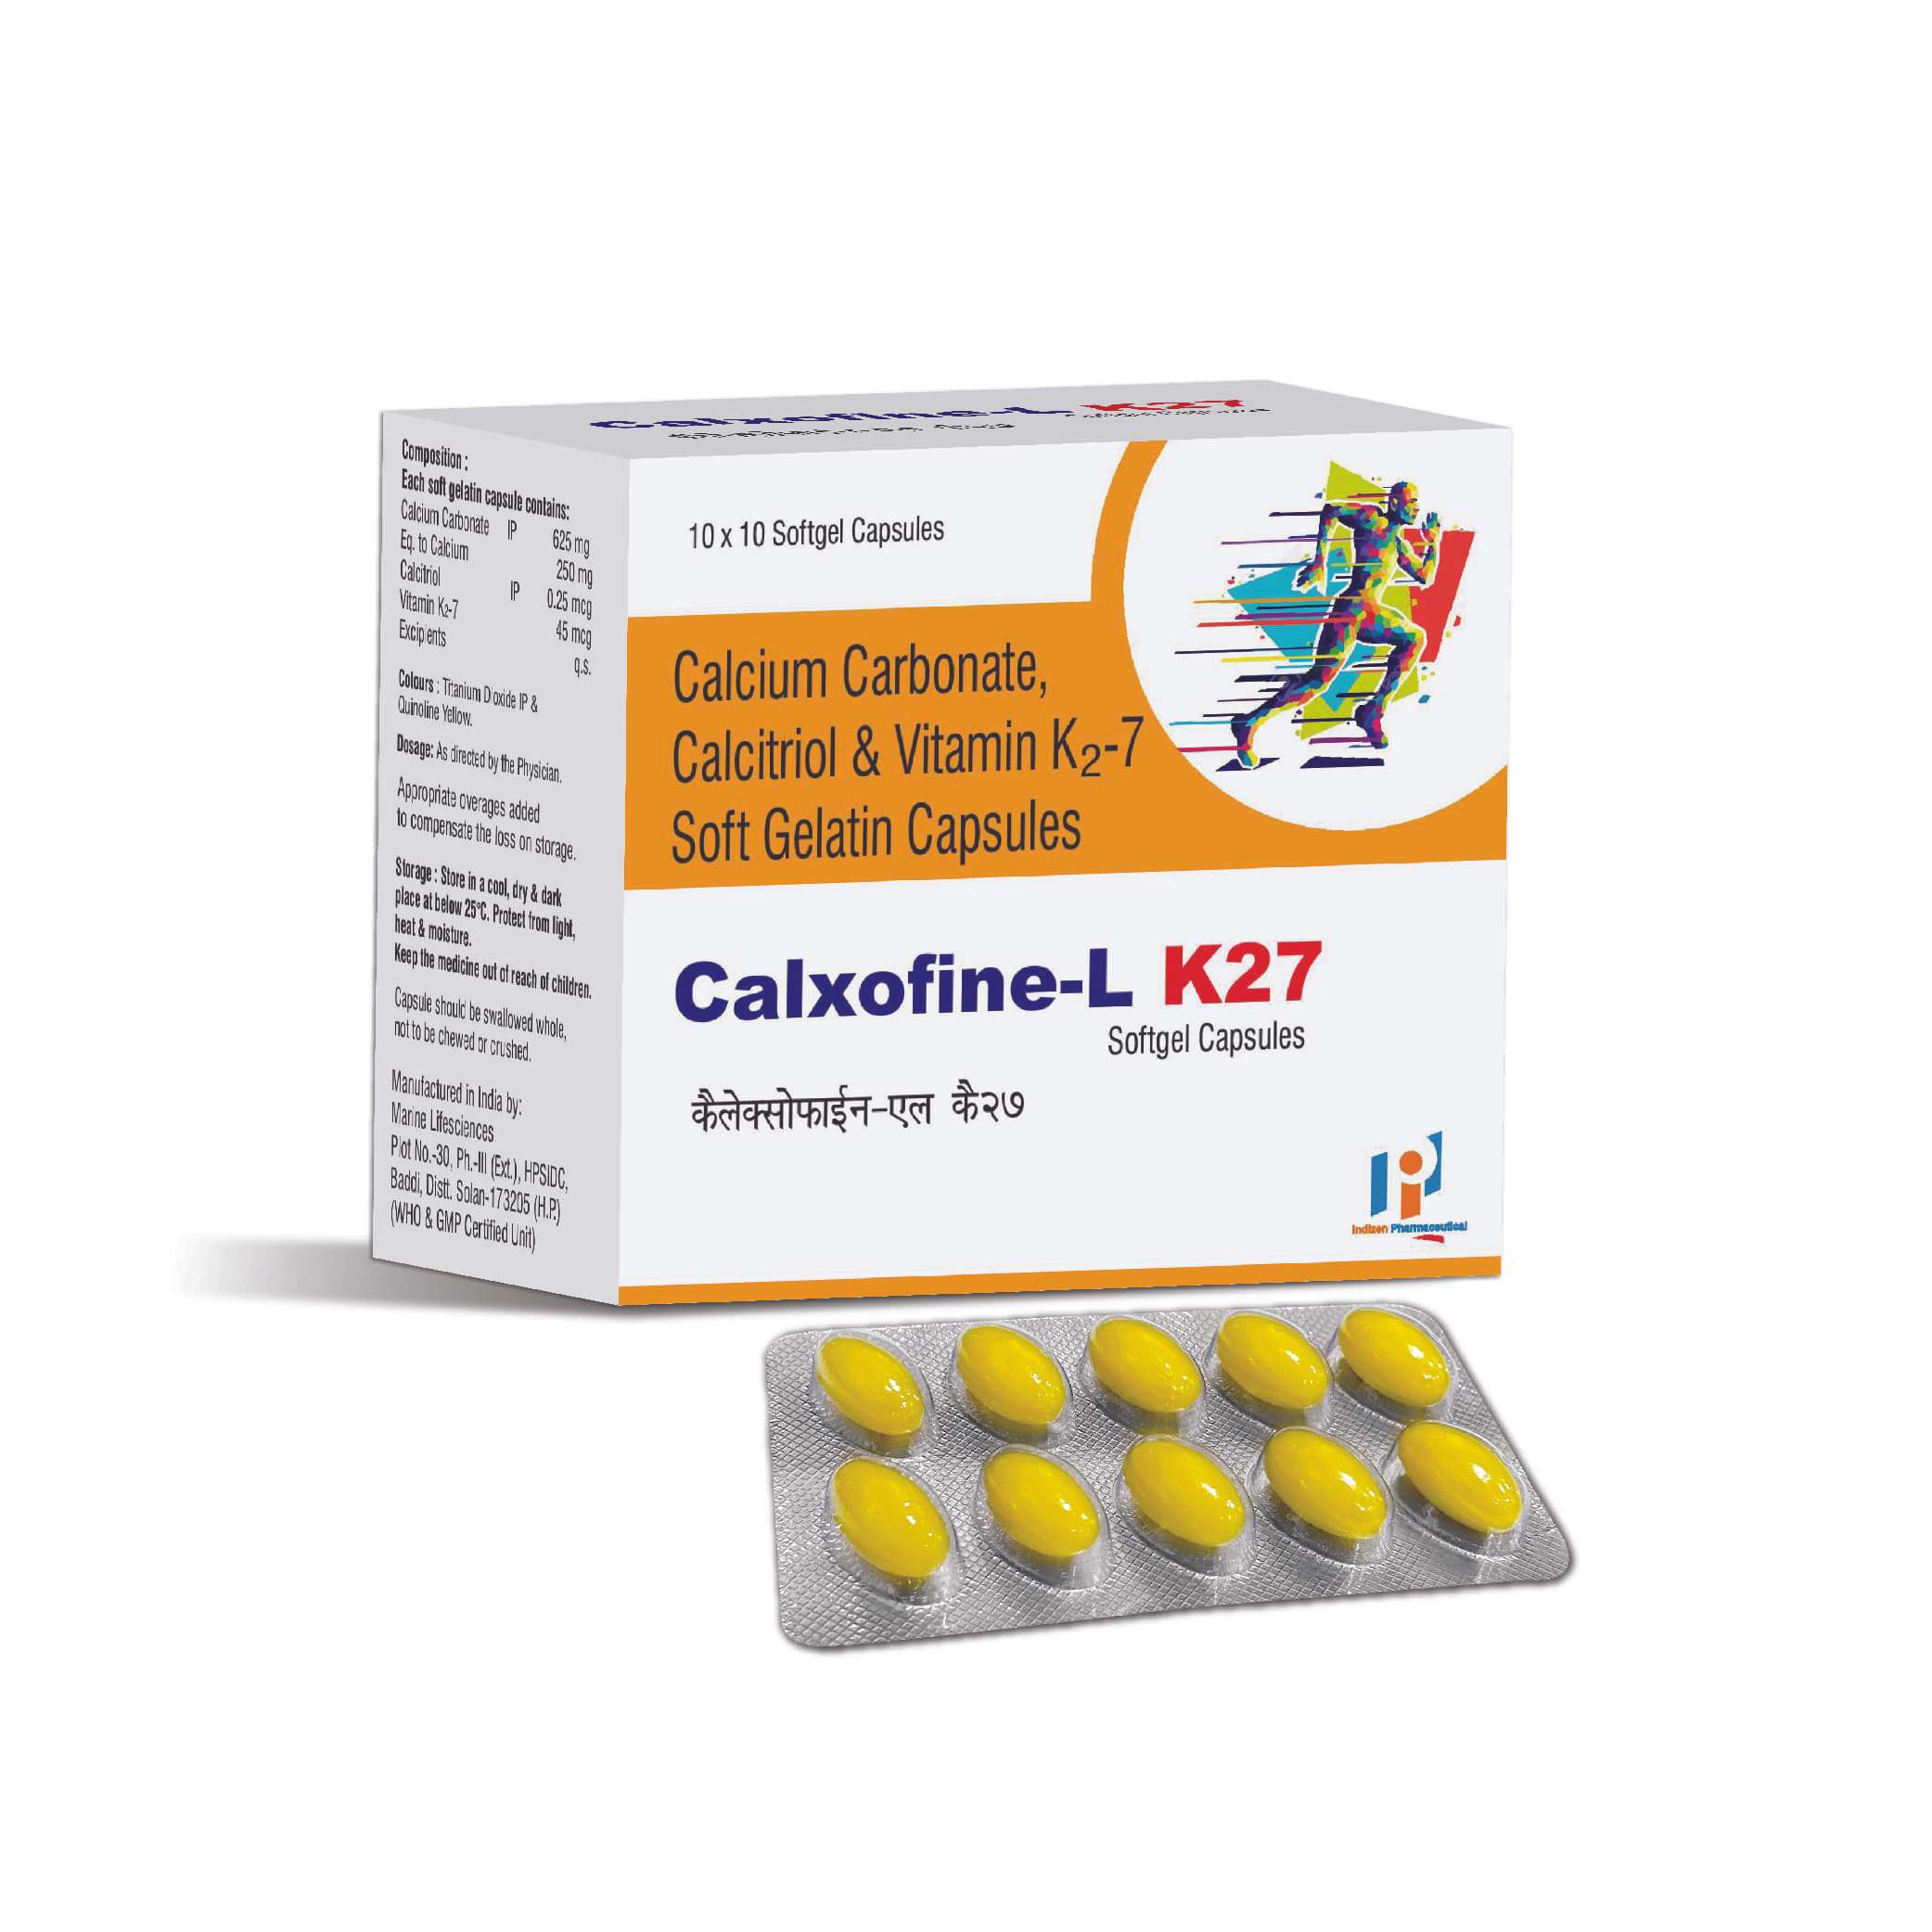 calcium carbonate 625 mg + elemental calcium 250 mg + calcitriol 0.25 mcg + vitamin k27